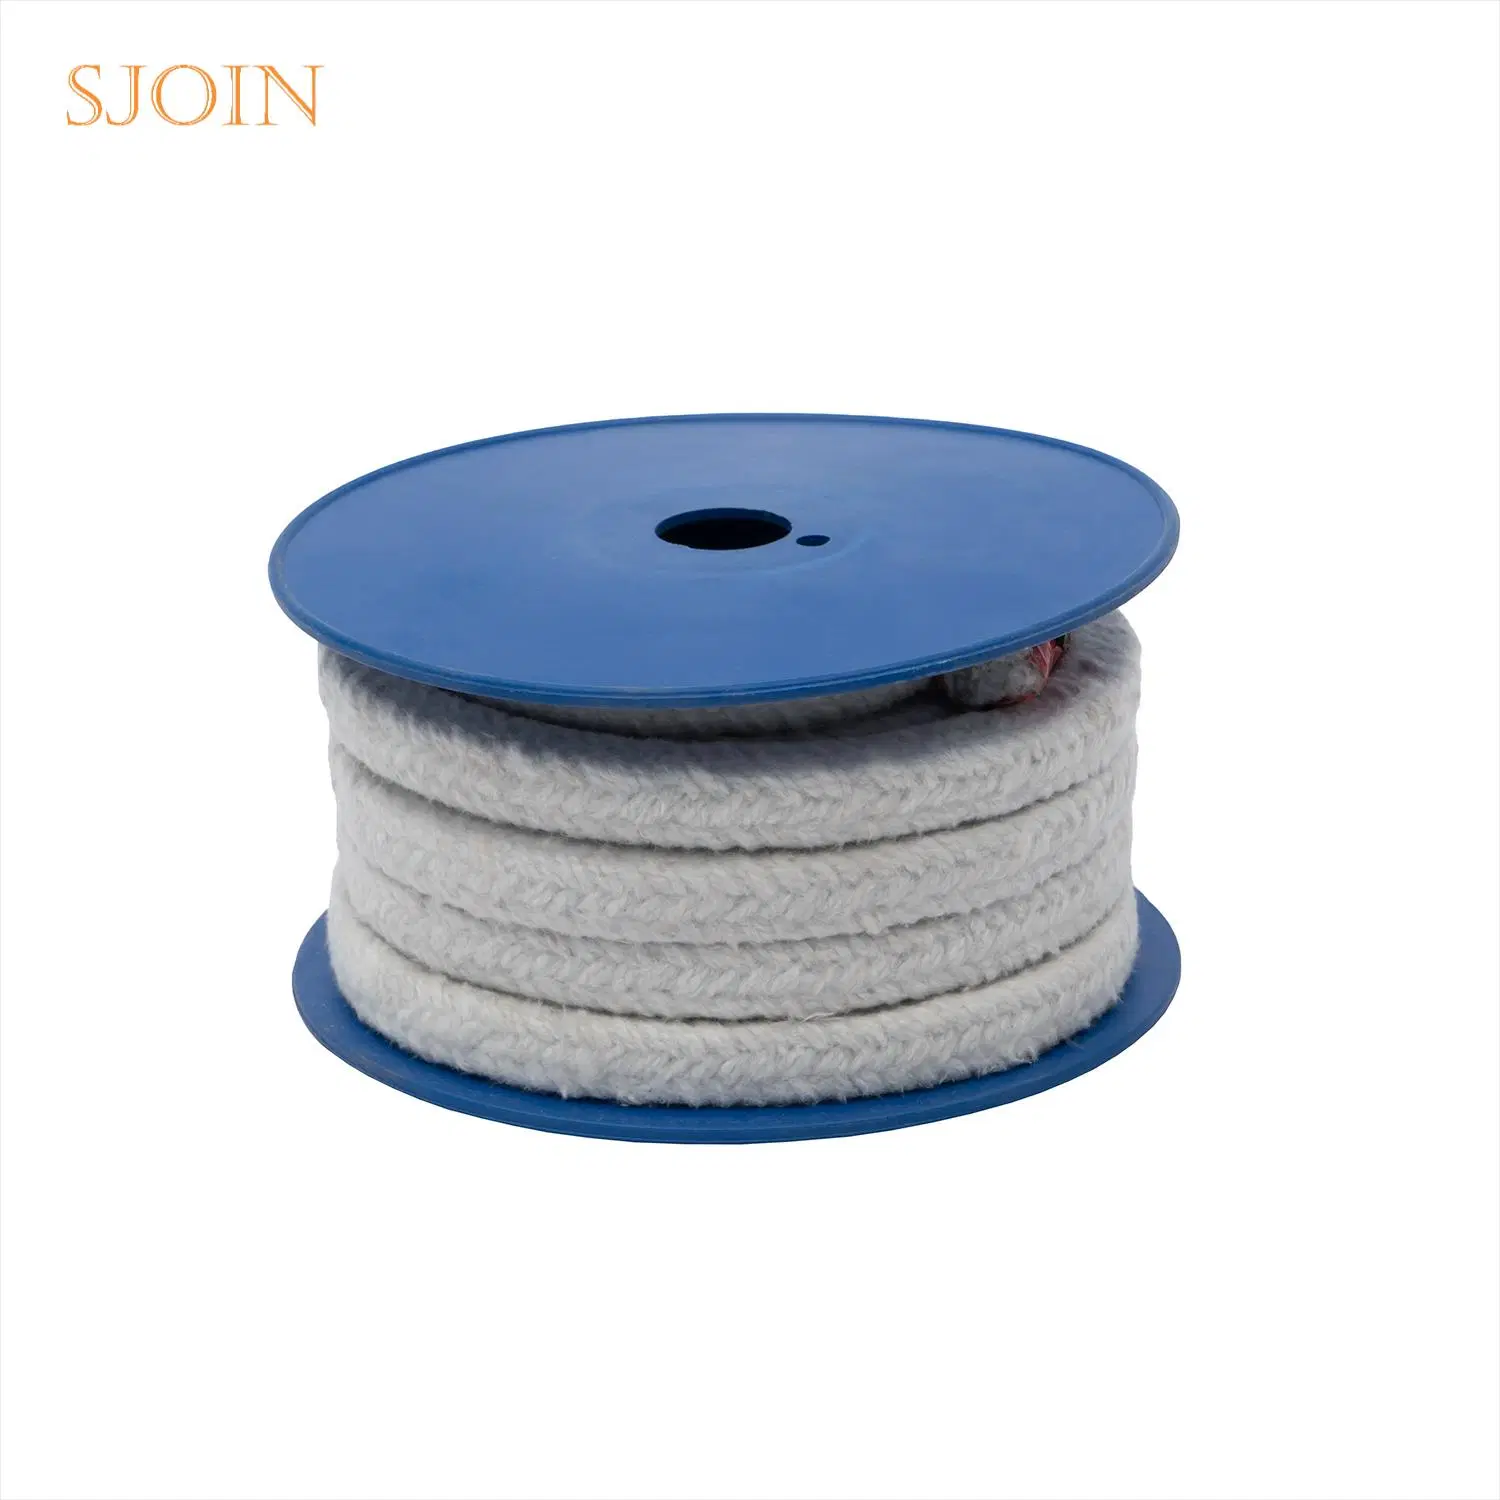 Hochtemperatur-Dichtung Isolierung Faser Seil Cord Keramik Verpackung für Herd Ofentür Für Ofenkessel